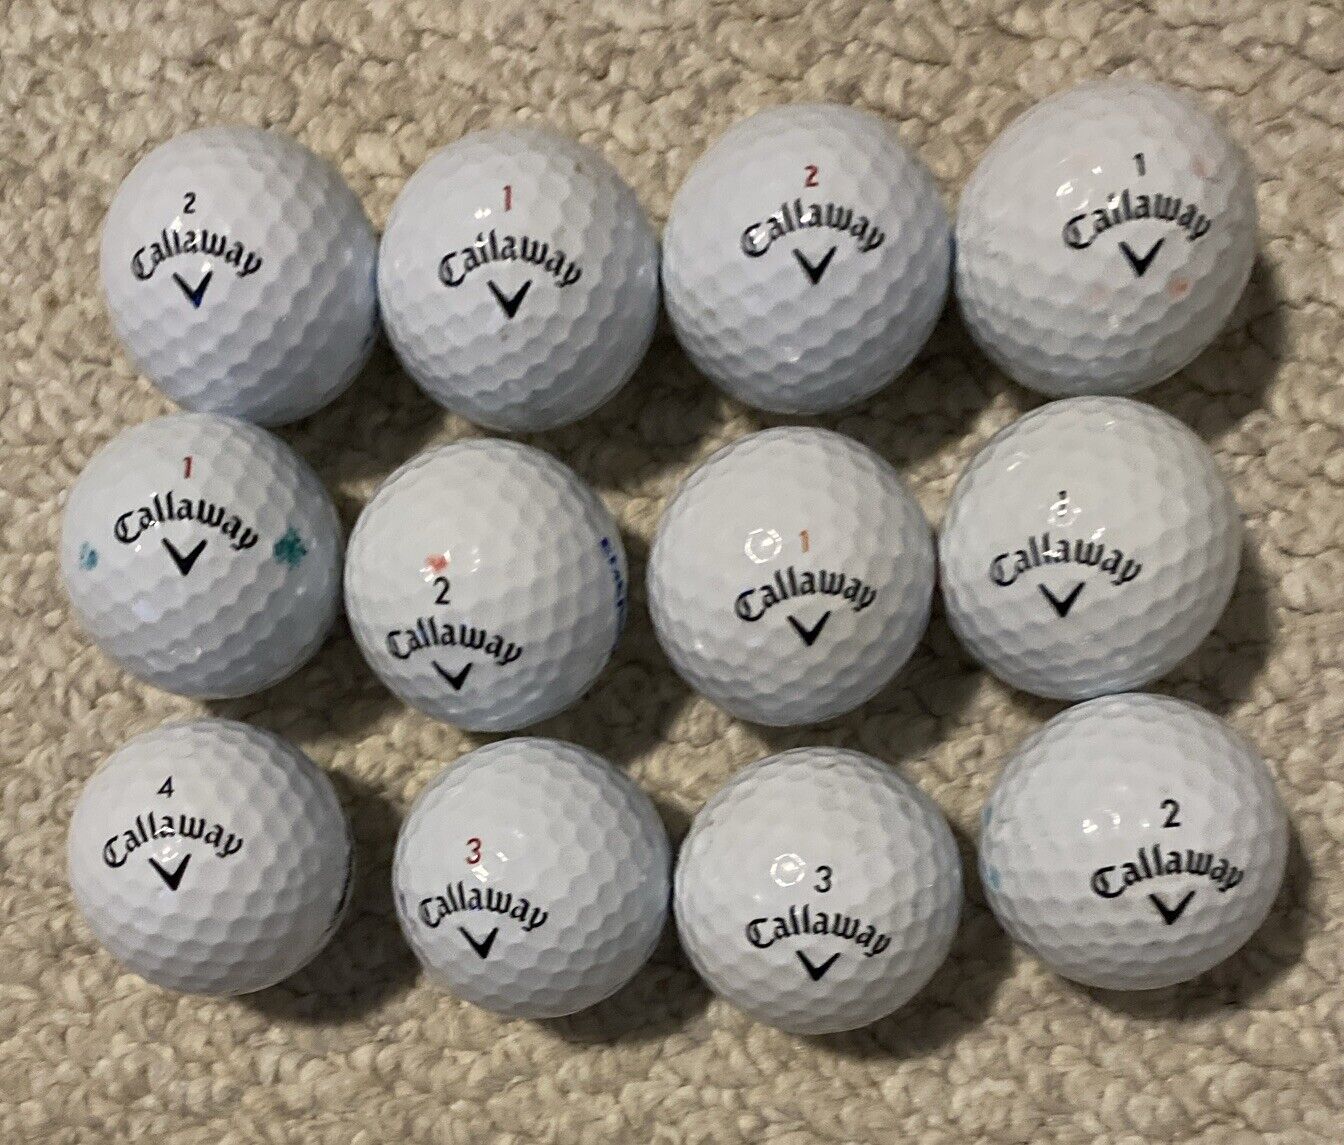 Used Callaway mixed golf balls - Dozen golf balls